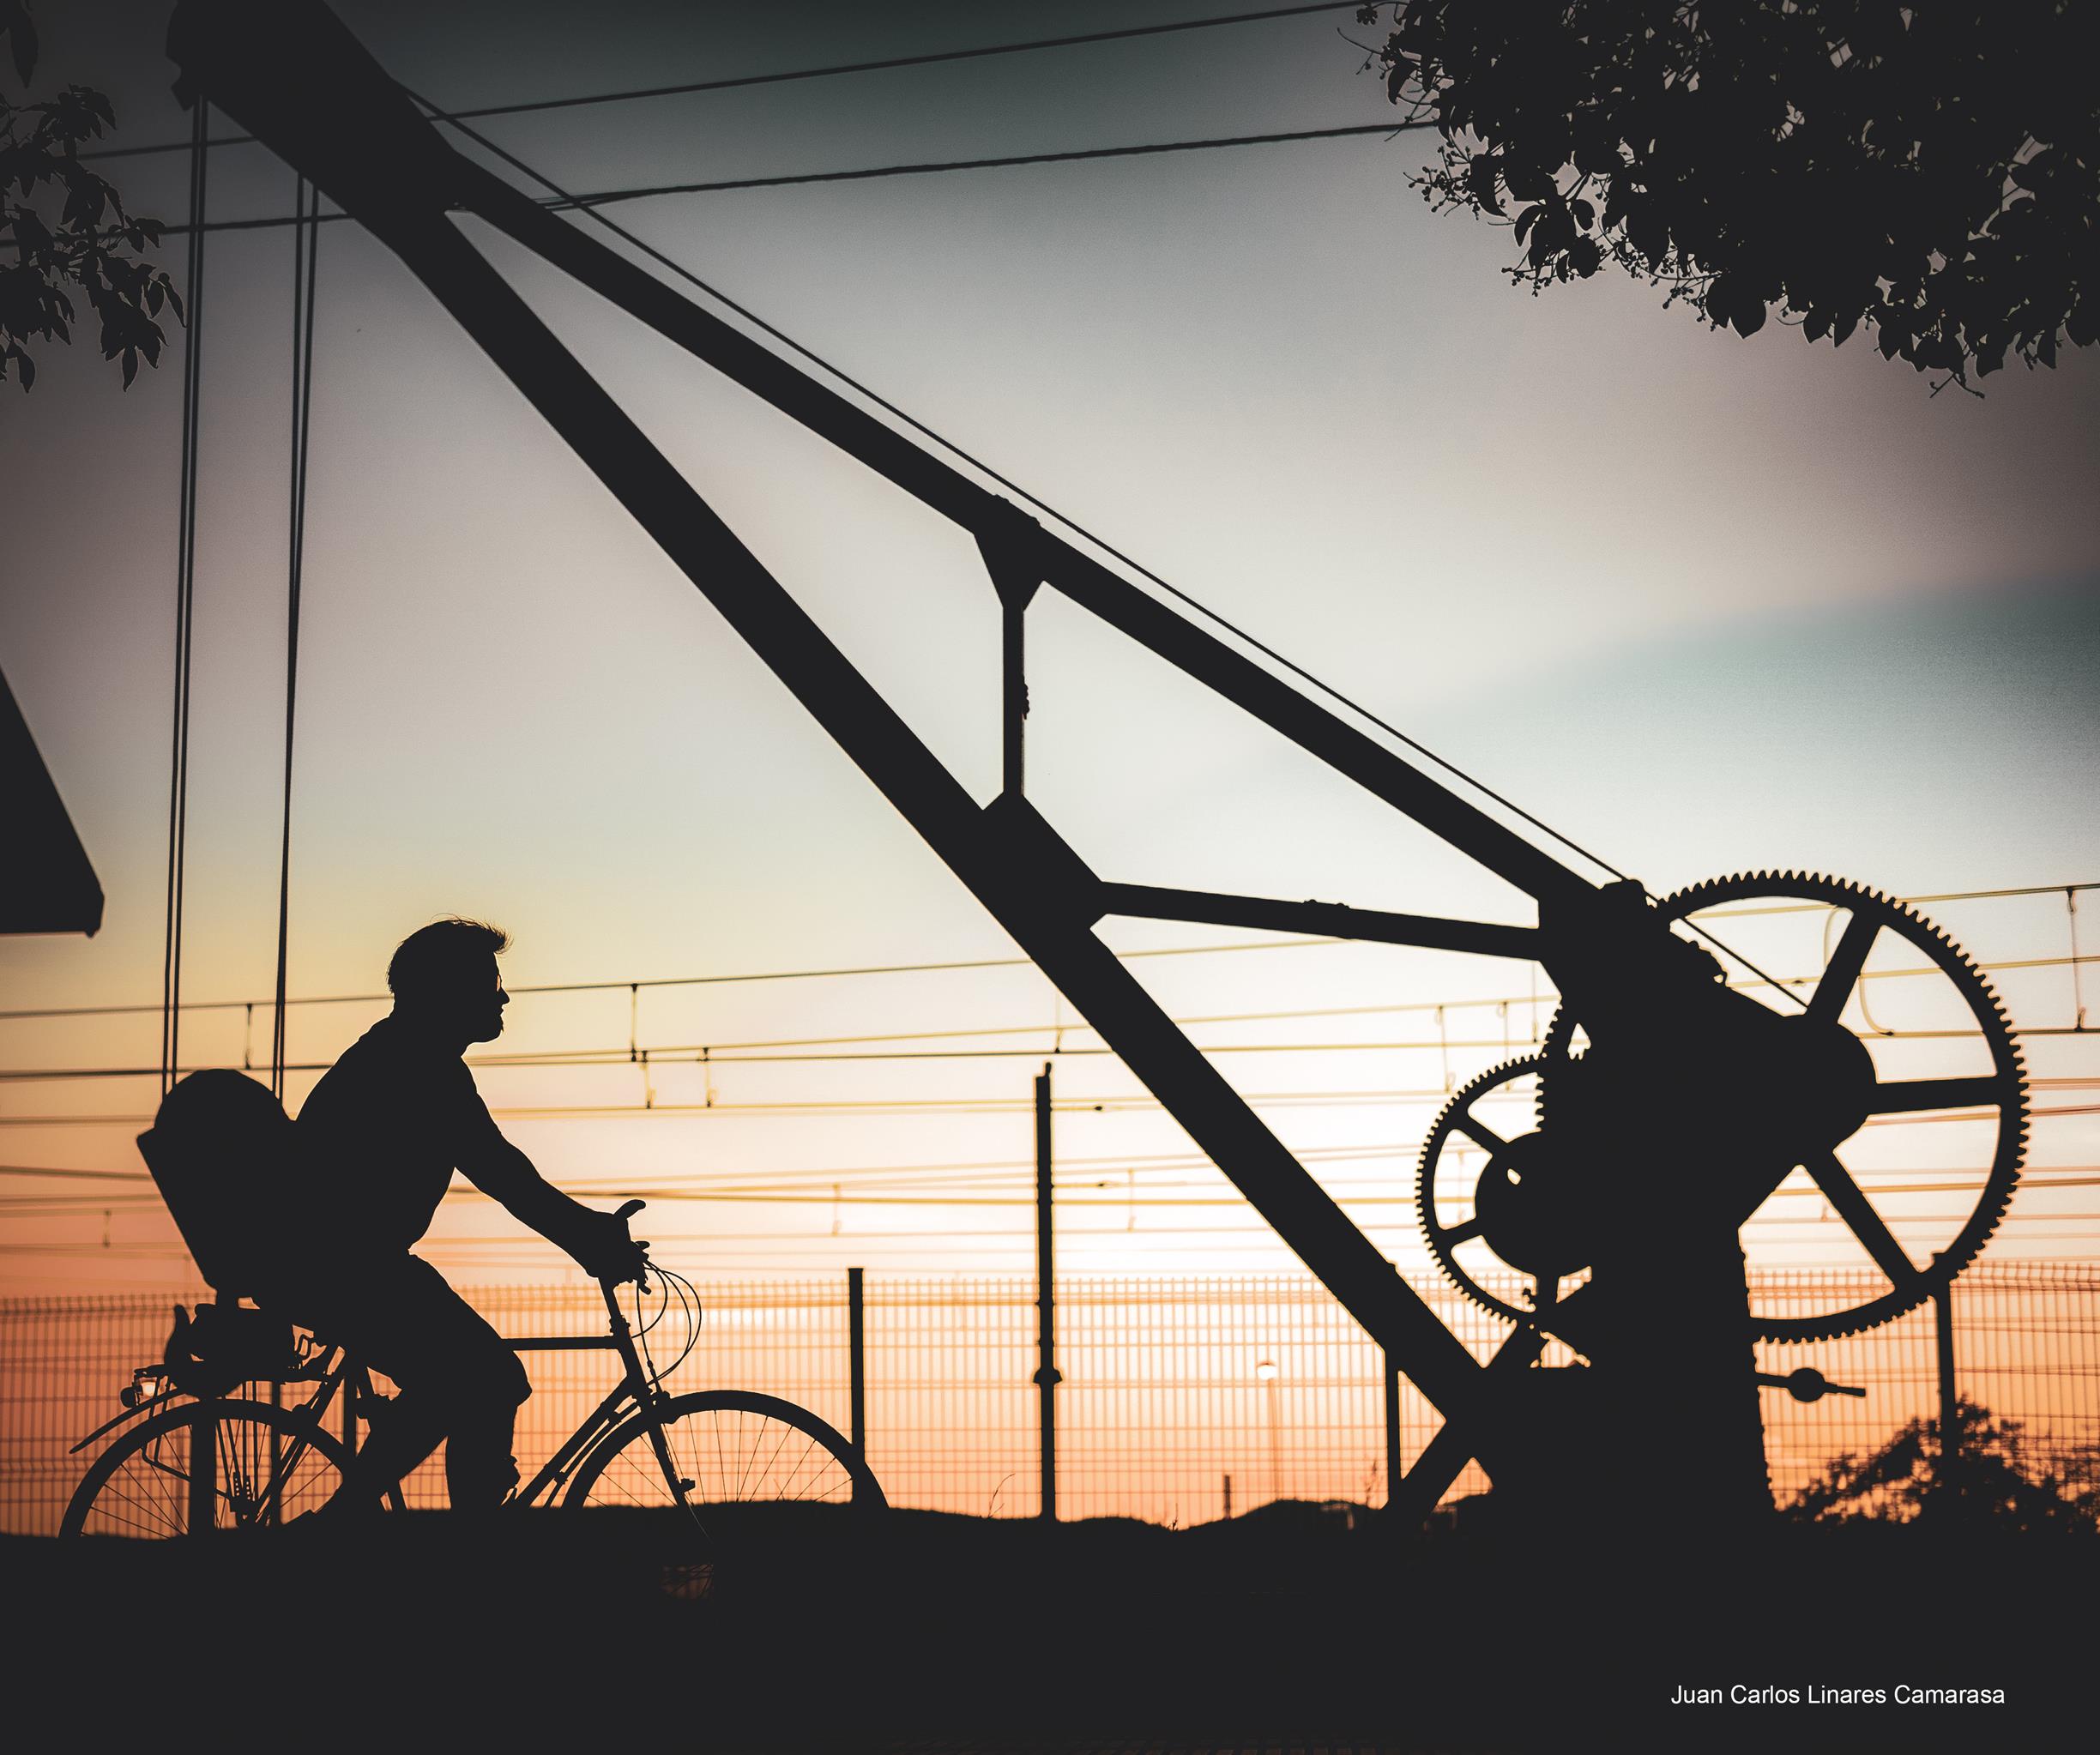 Juan Carlos Linares gana el concurso de fotografía “La bici y Villena”